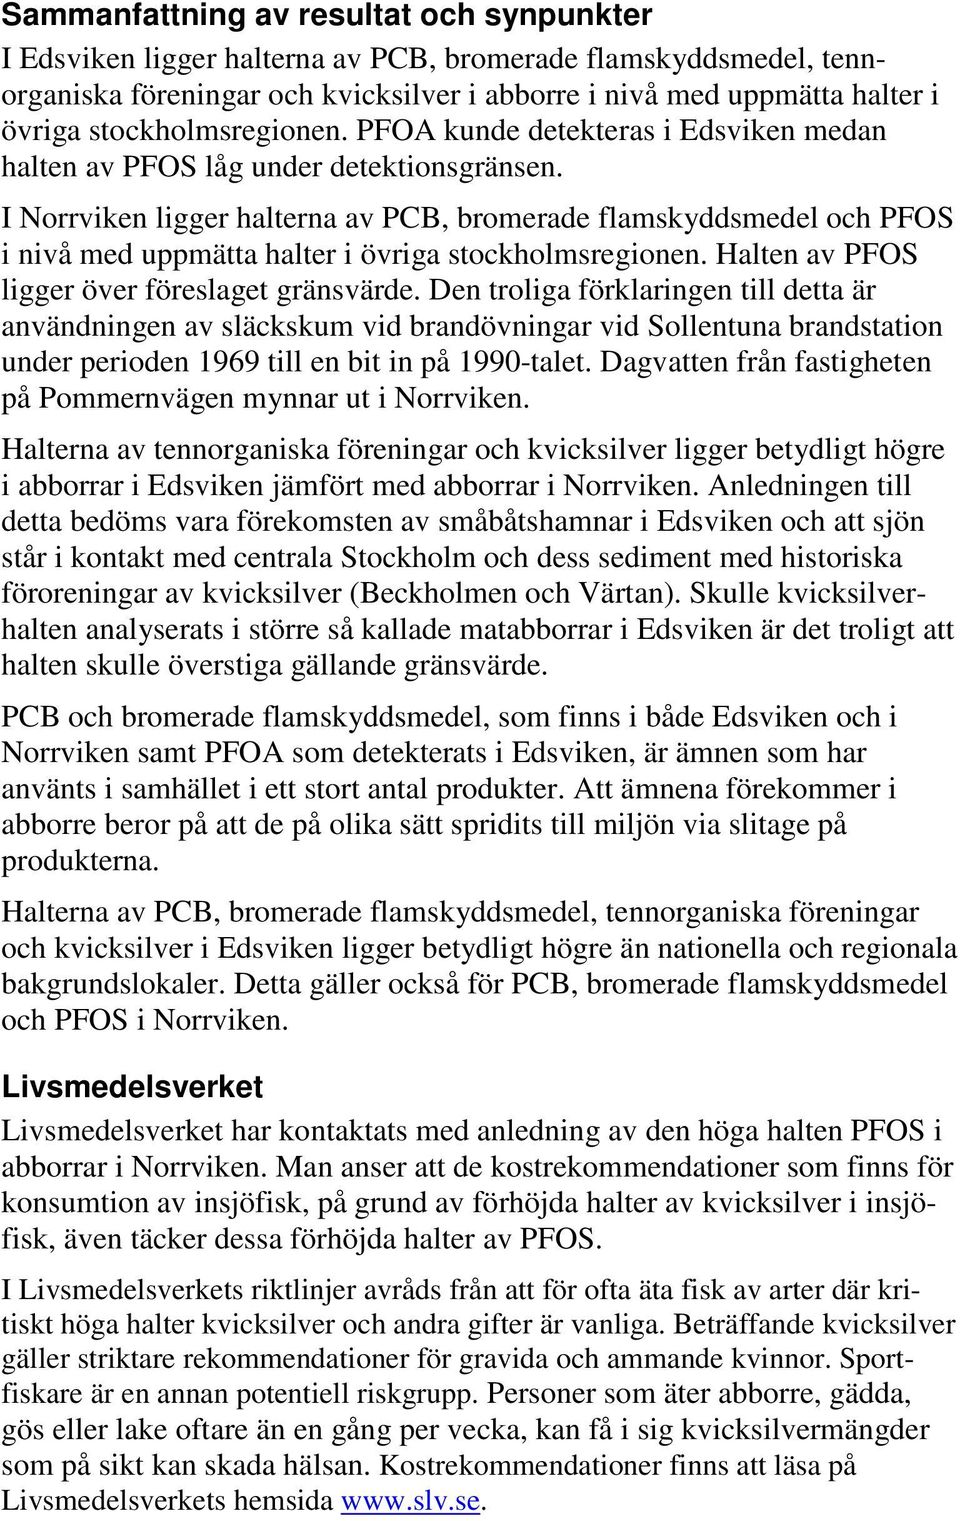 I Norrviken ligger halterna av PCB, bromerade flamskyddsmedel och PFOS i nivå med uppmätta halter i övriga stockholmsregionen. Halten av PFOS ligger över föreslaget gränsvärde.